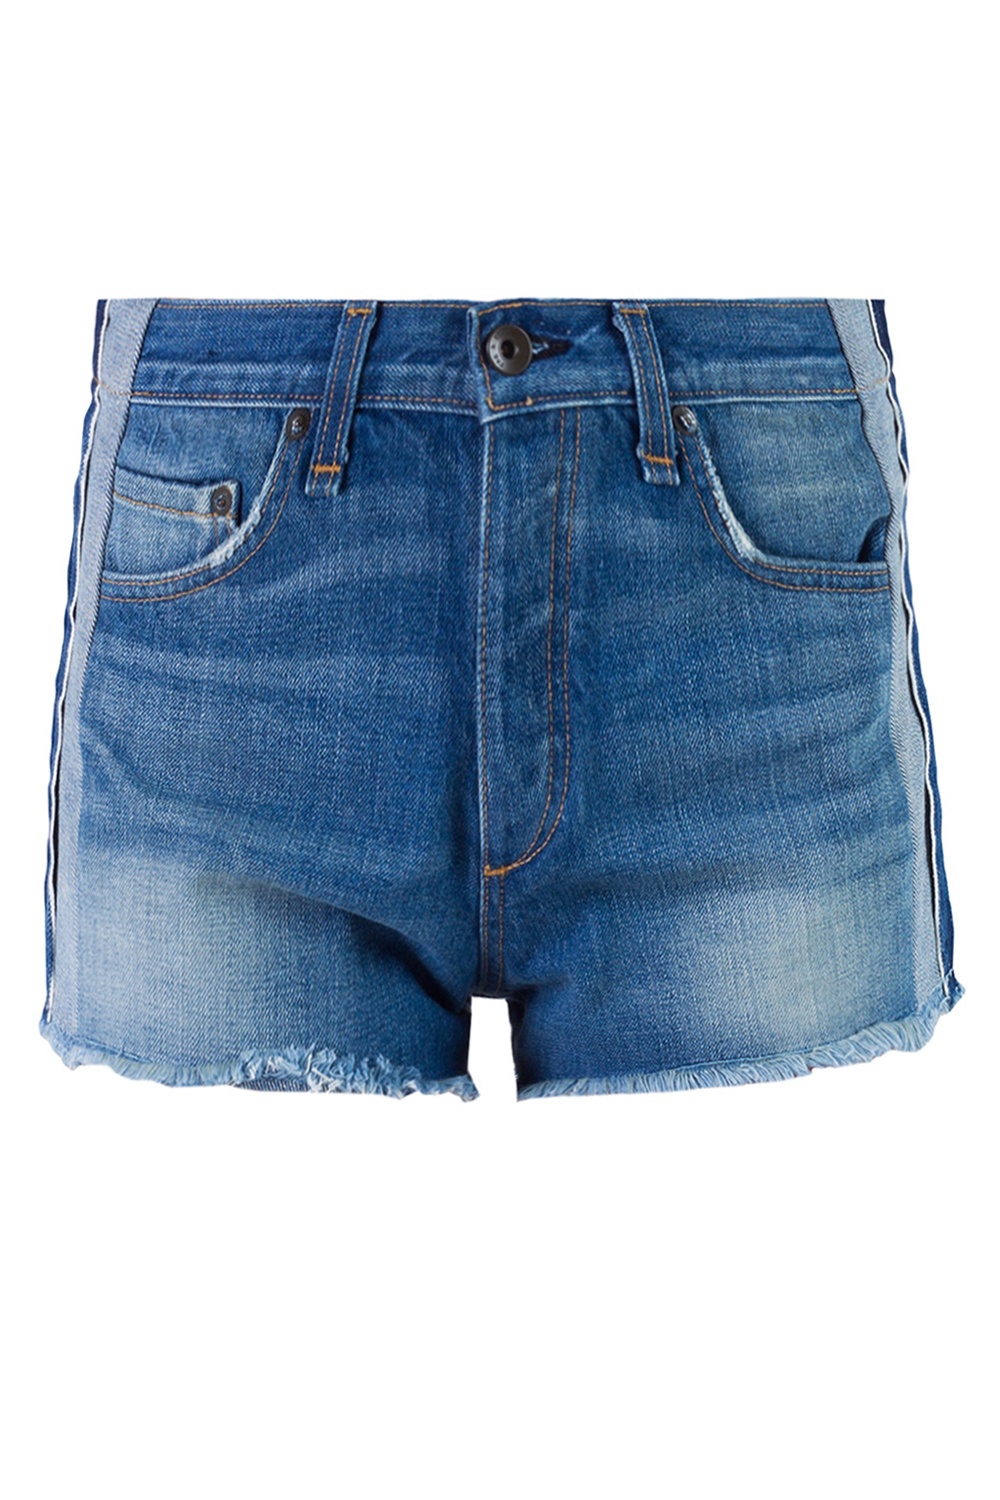 Rag & Bone Side-stripe denim shorts | Women's Clothing | Vitkac